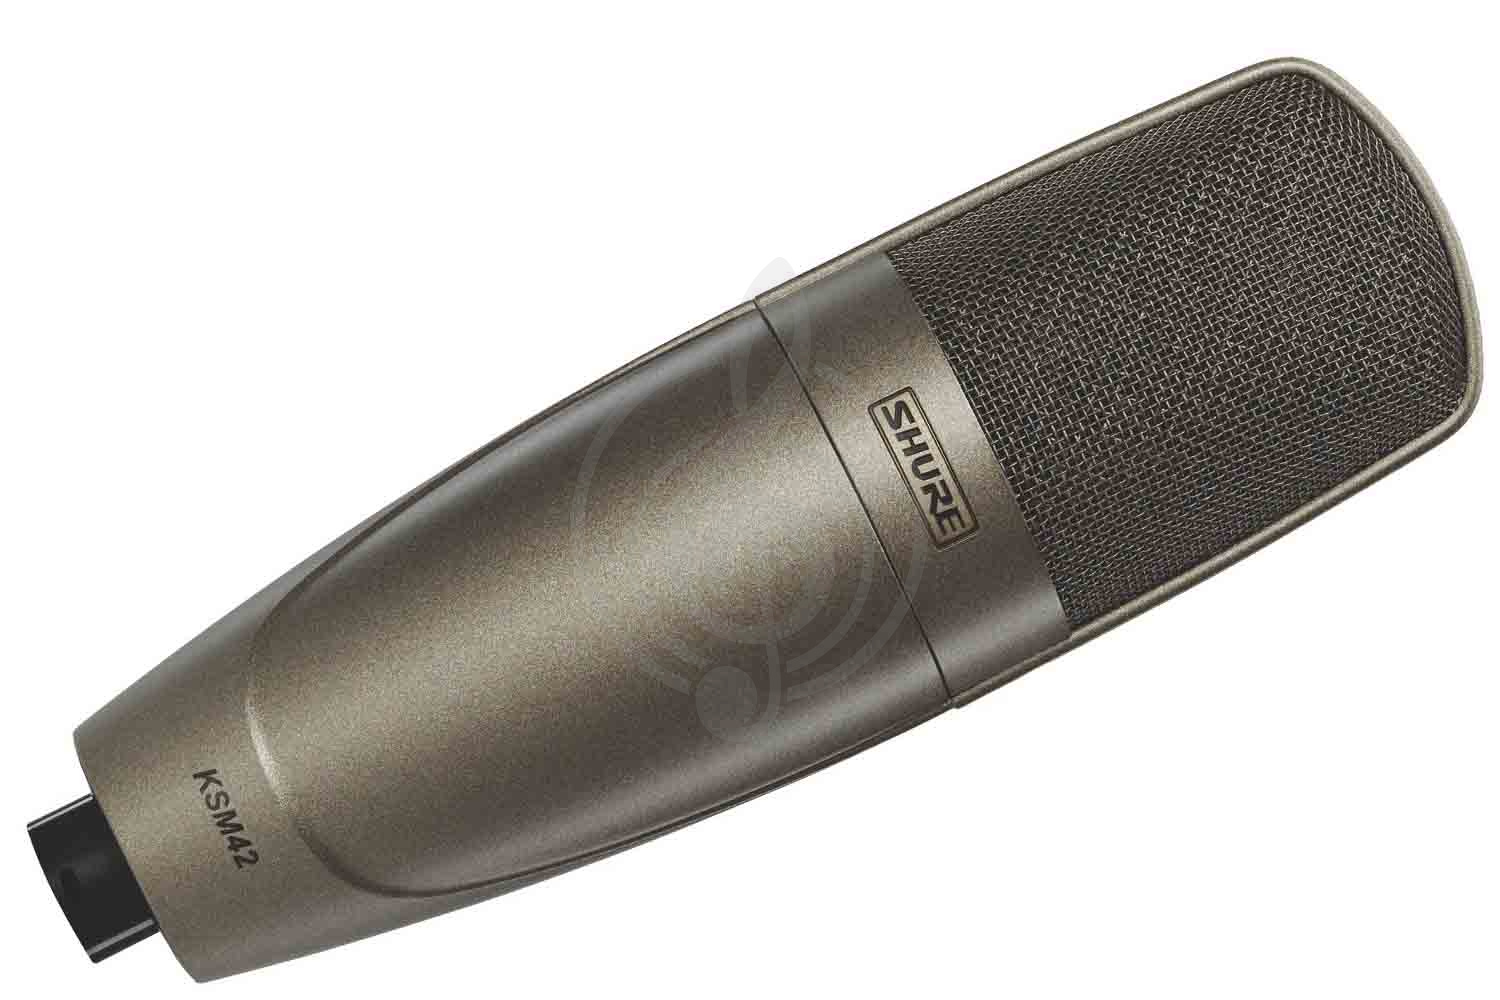 Конденсаторный студийный микрофон Конденсаторные студийные микрофоны Shure SHURE KSM42/SG - конденсаторный студийный микрофон KSM42/SG - фото 1